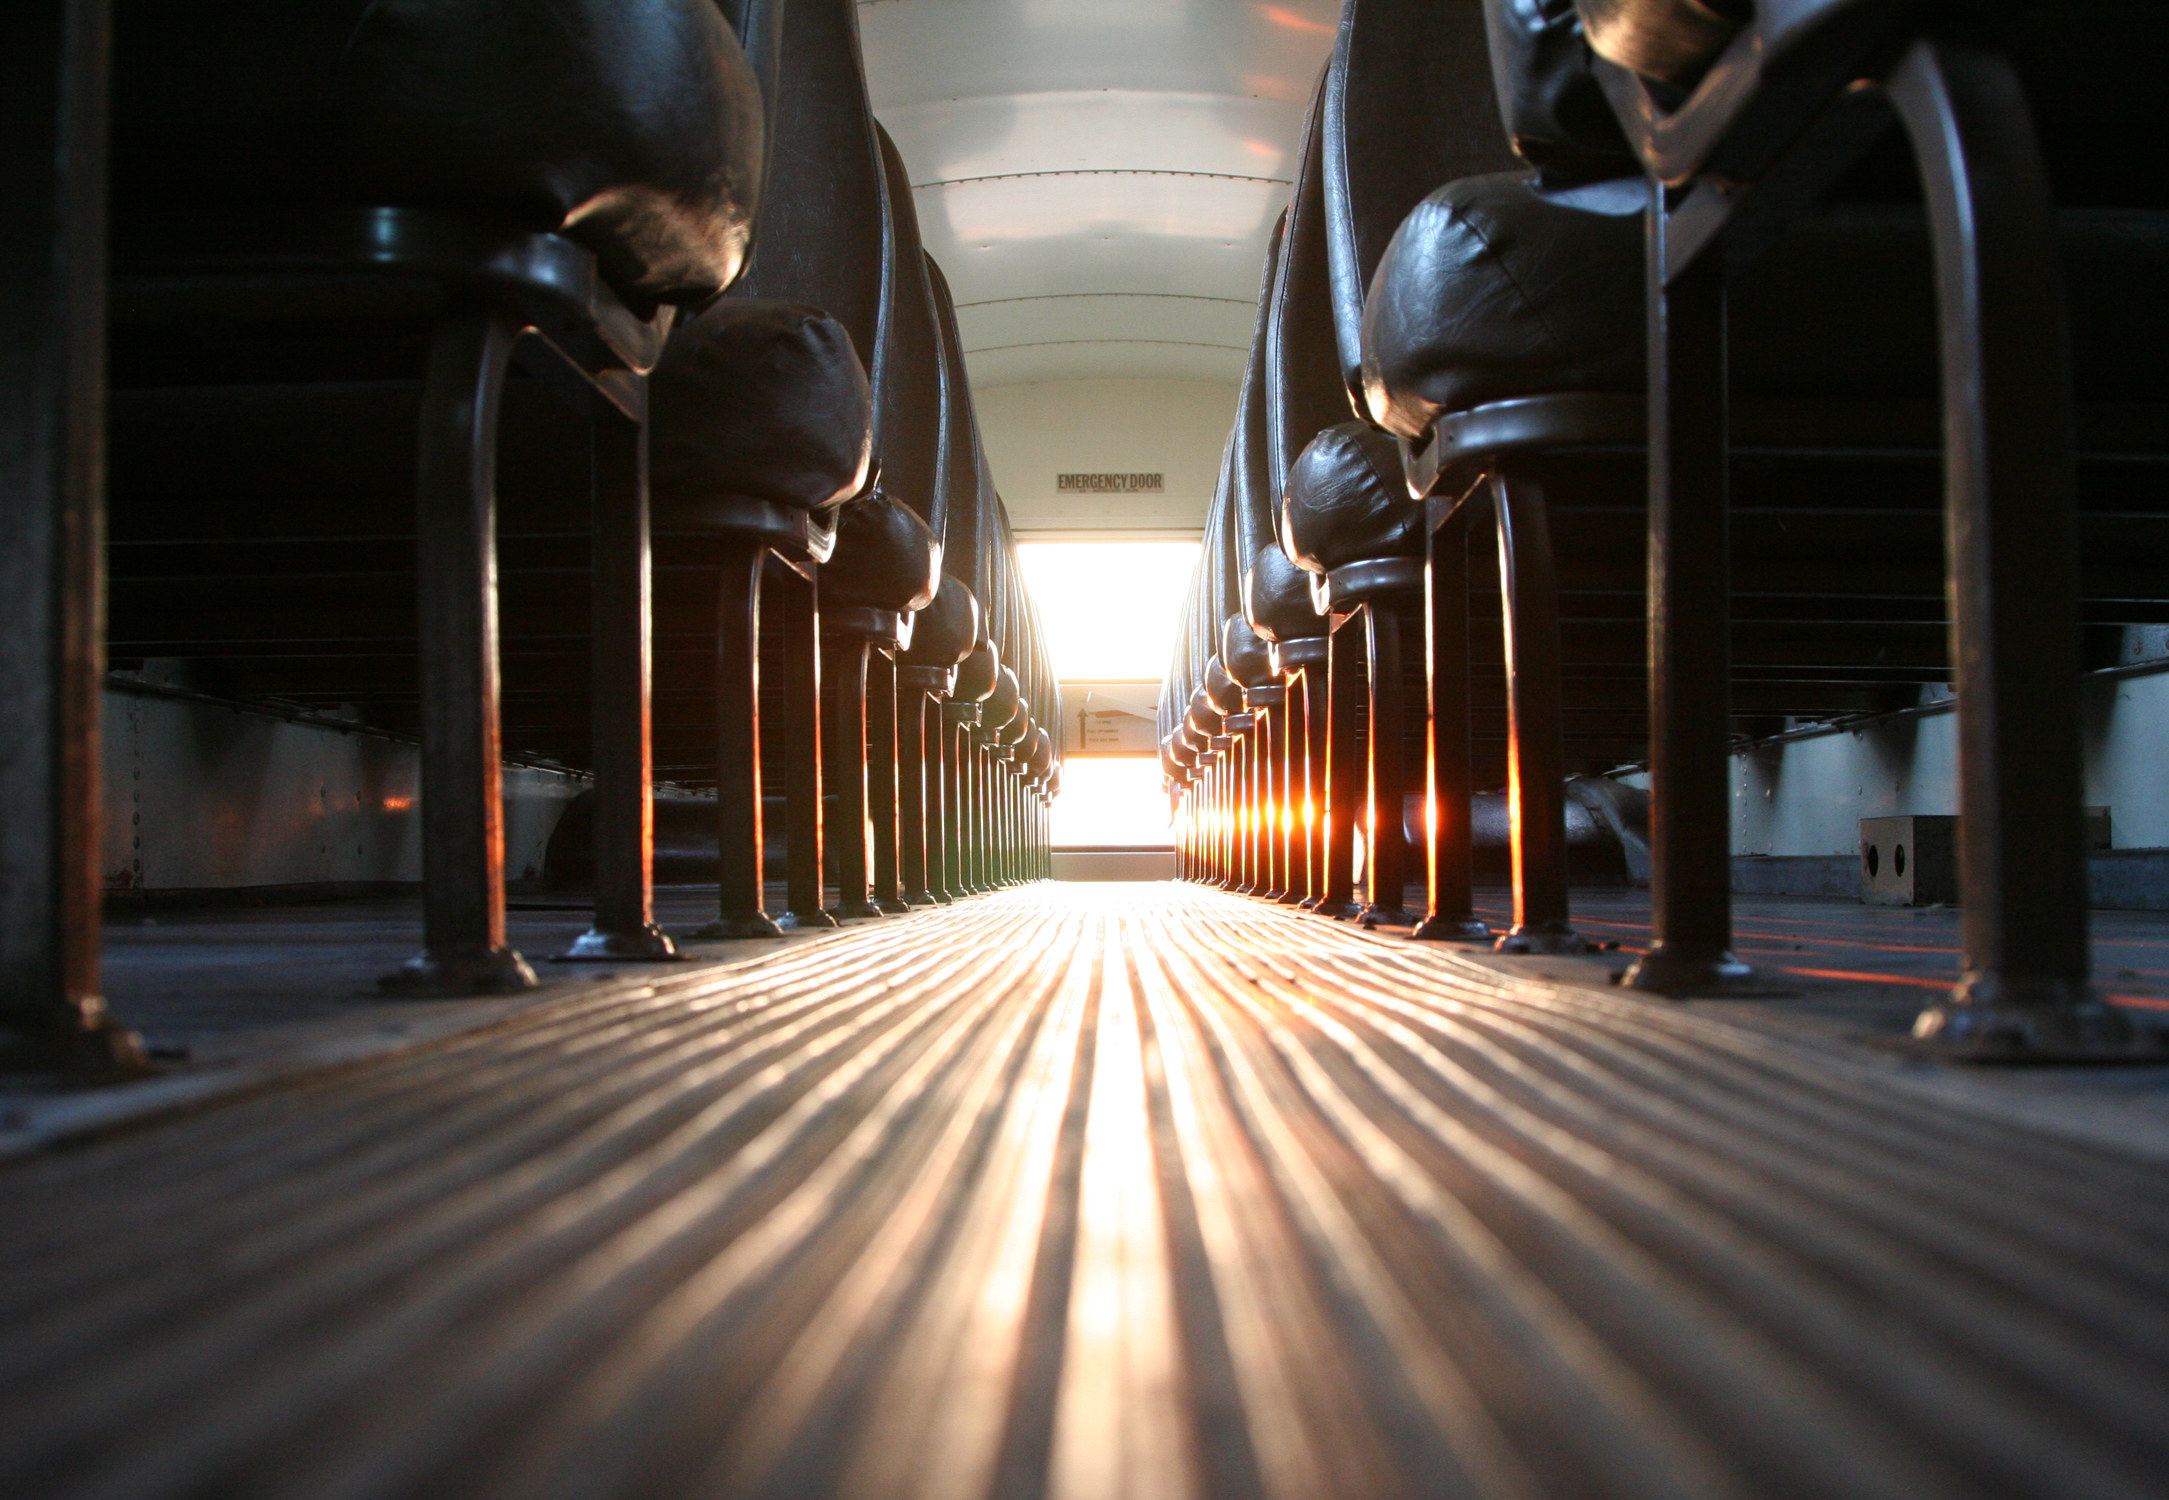 the floor of a school bus